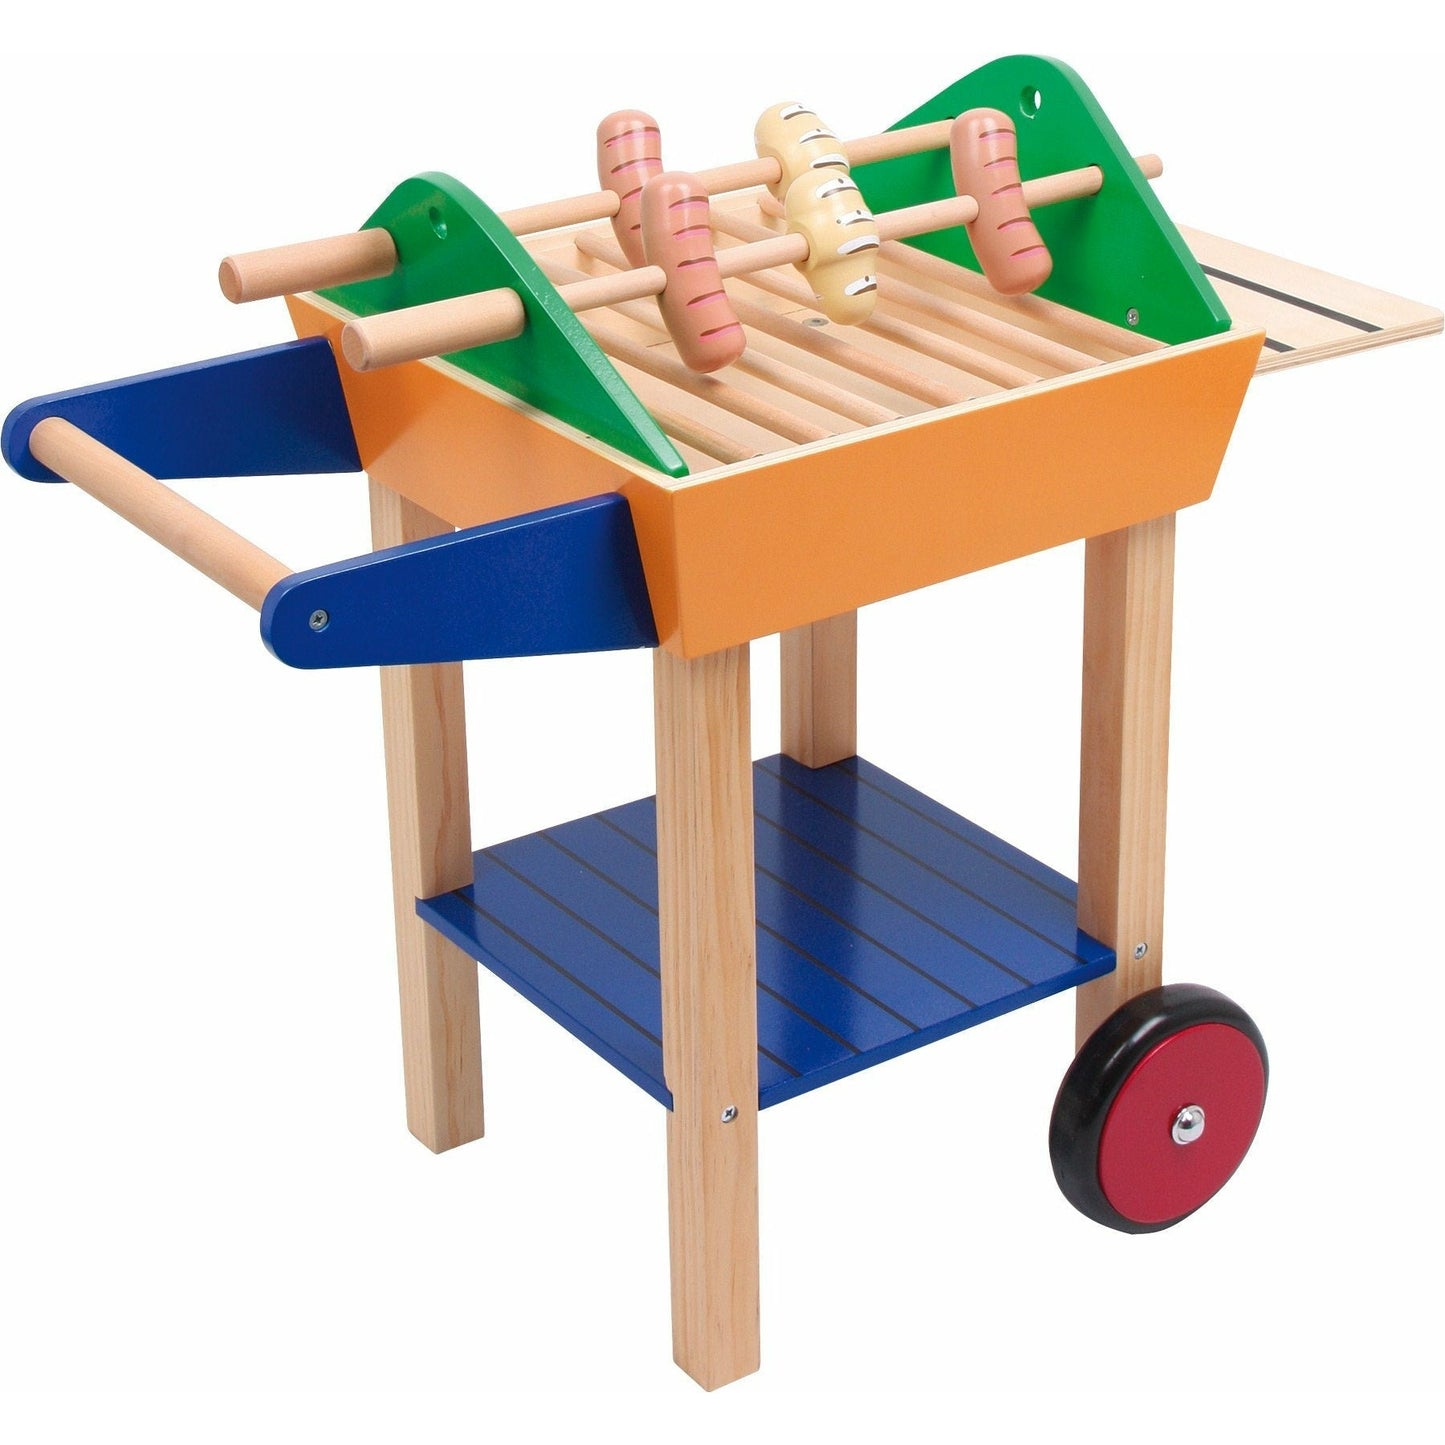 Personalisierter Holz Grill Spielzeug Küche Kinder Grill Spielzeug Holzspielzeug für Kinder ab 3 Jahren.